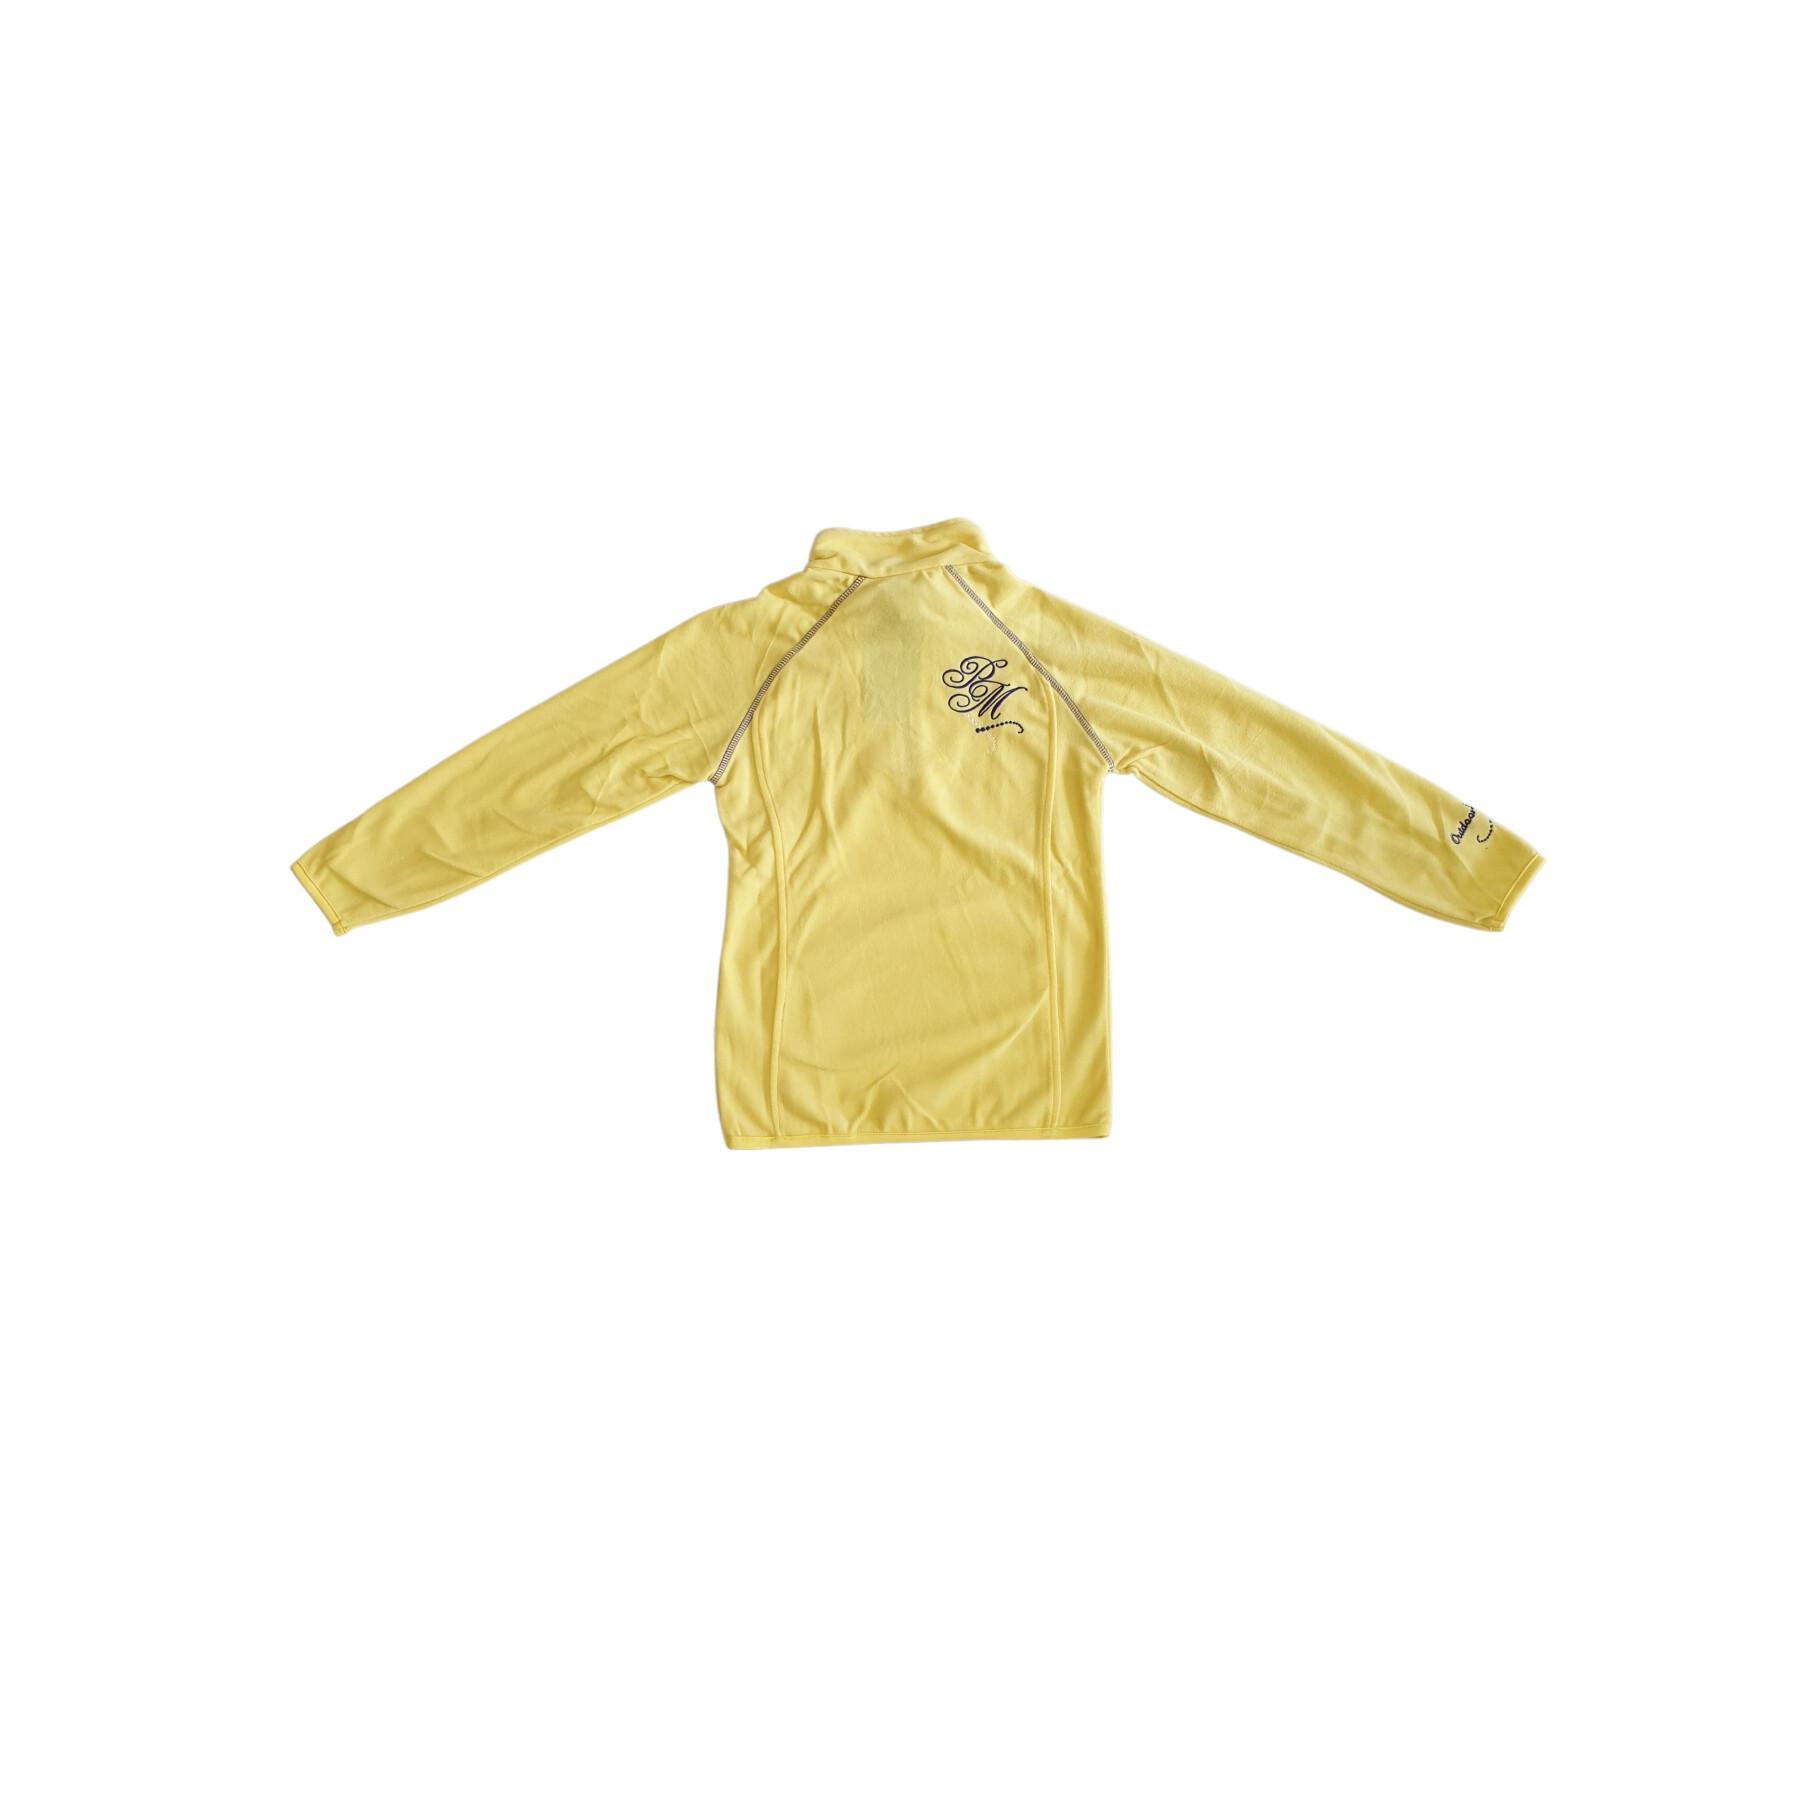 Micro fleece half zip sweatshirt for girls Peak Mountain Gafine